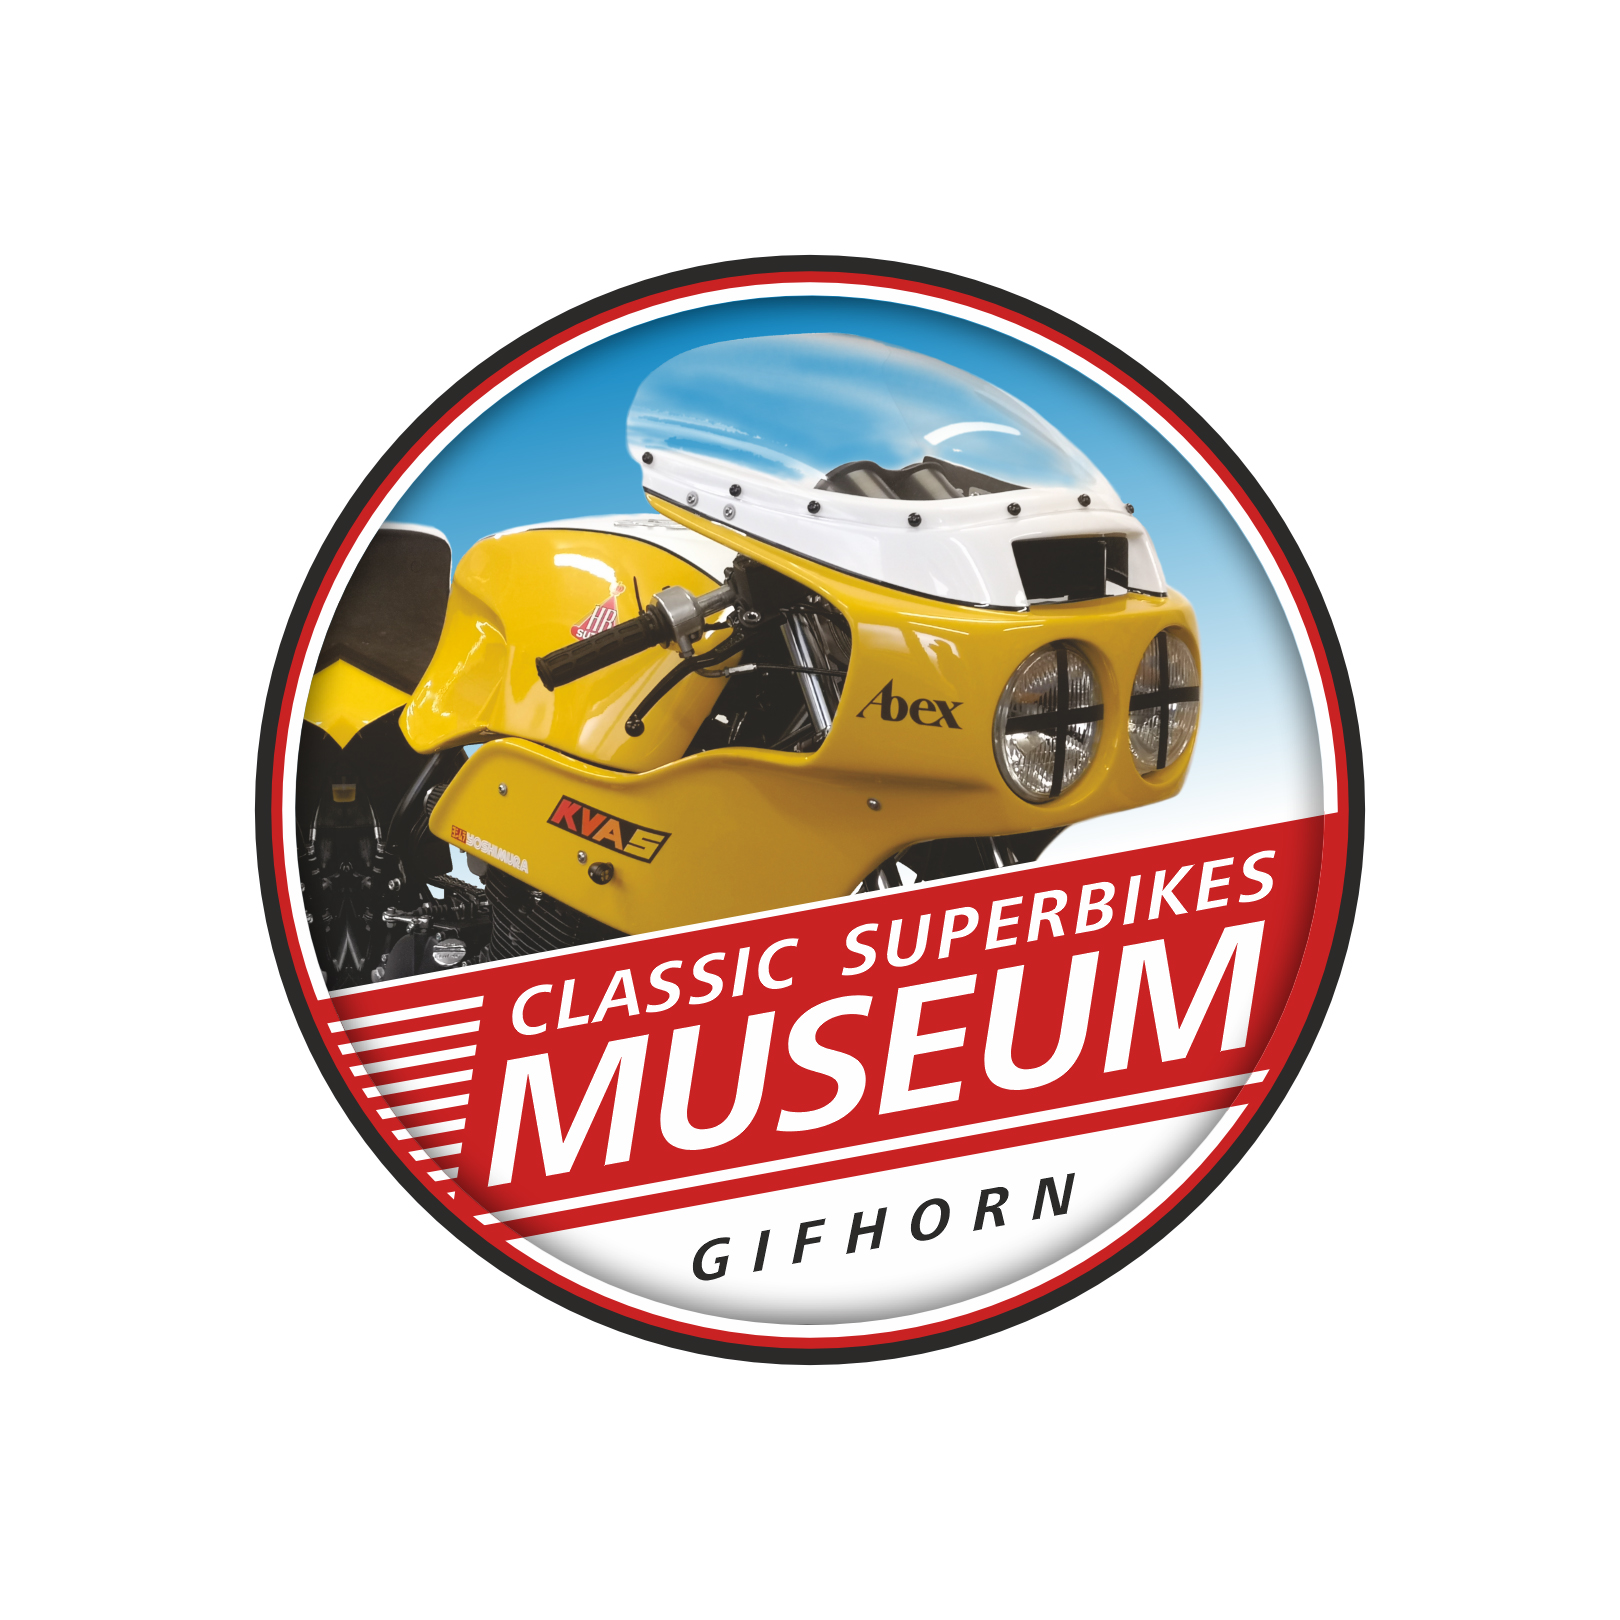 Classic Superbikes Motorrad Museum Logo.jpg